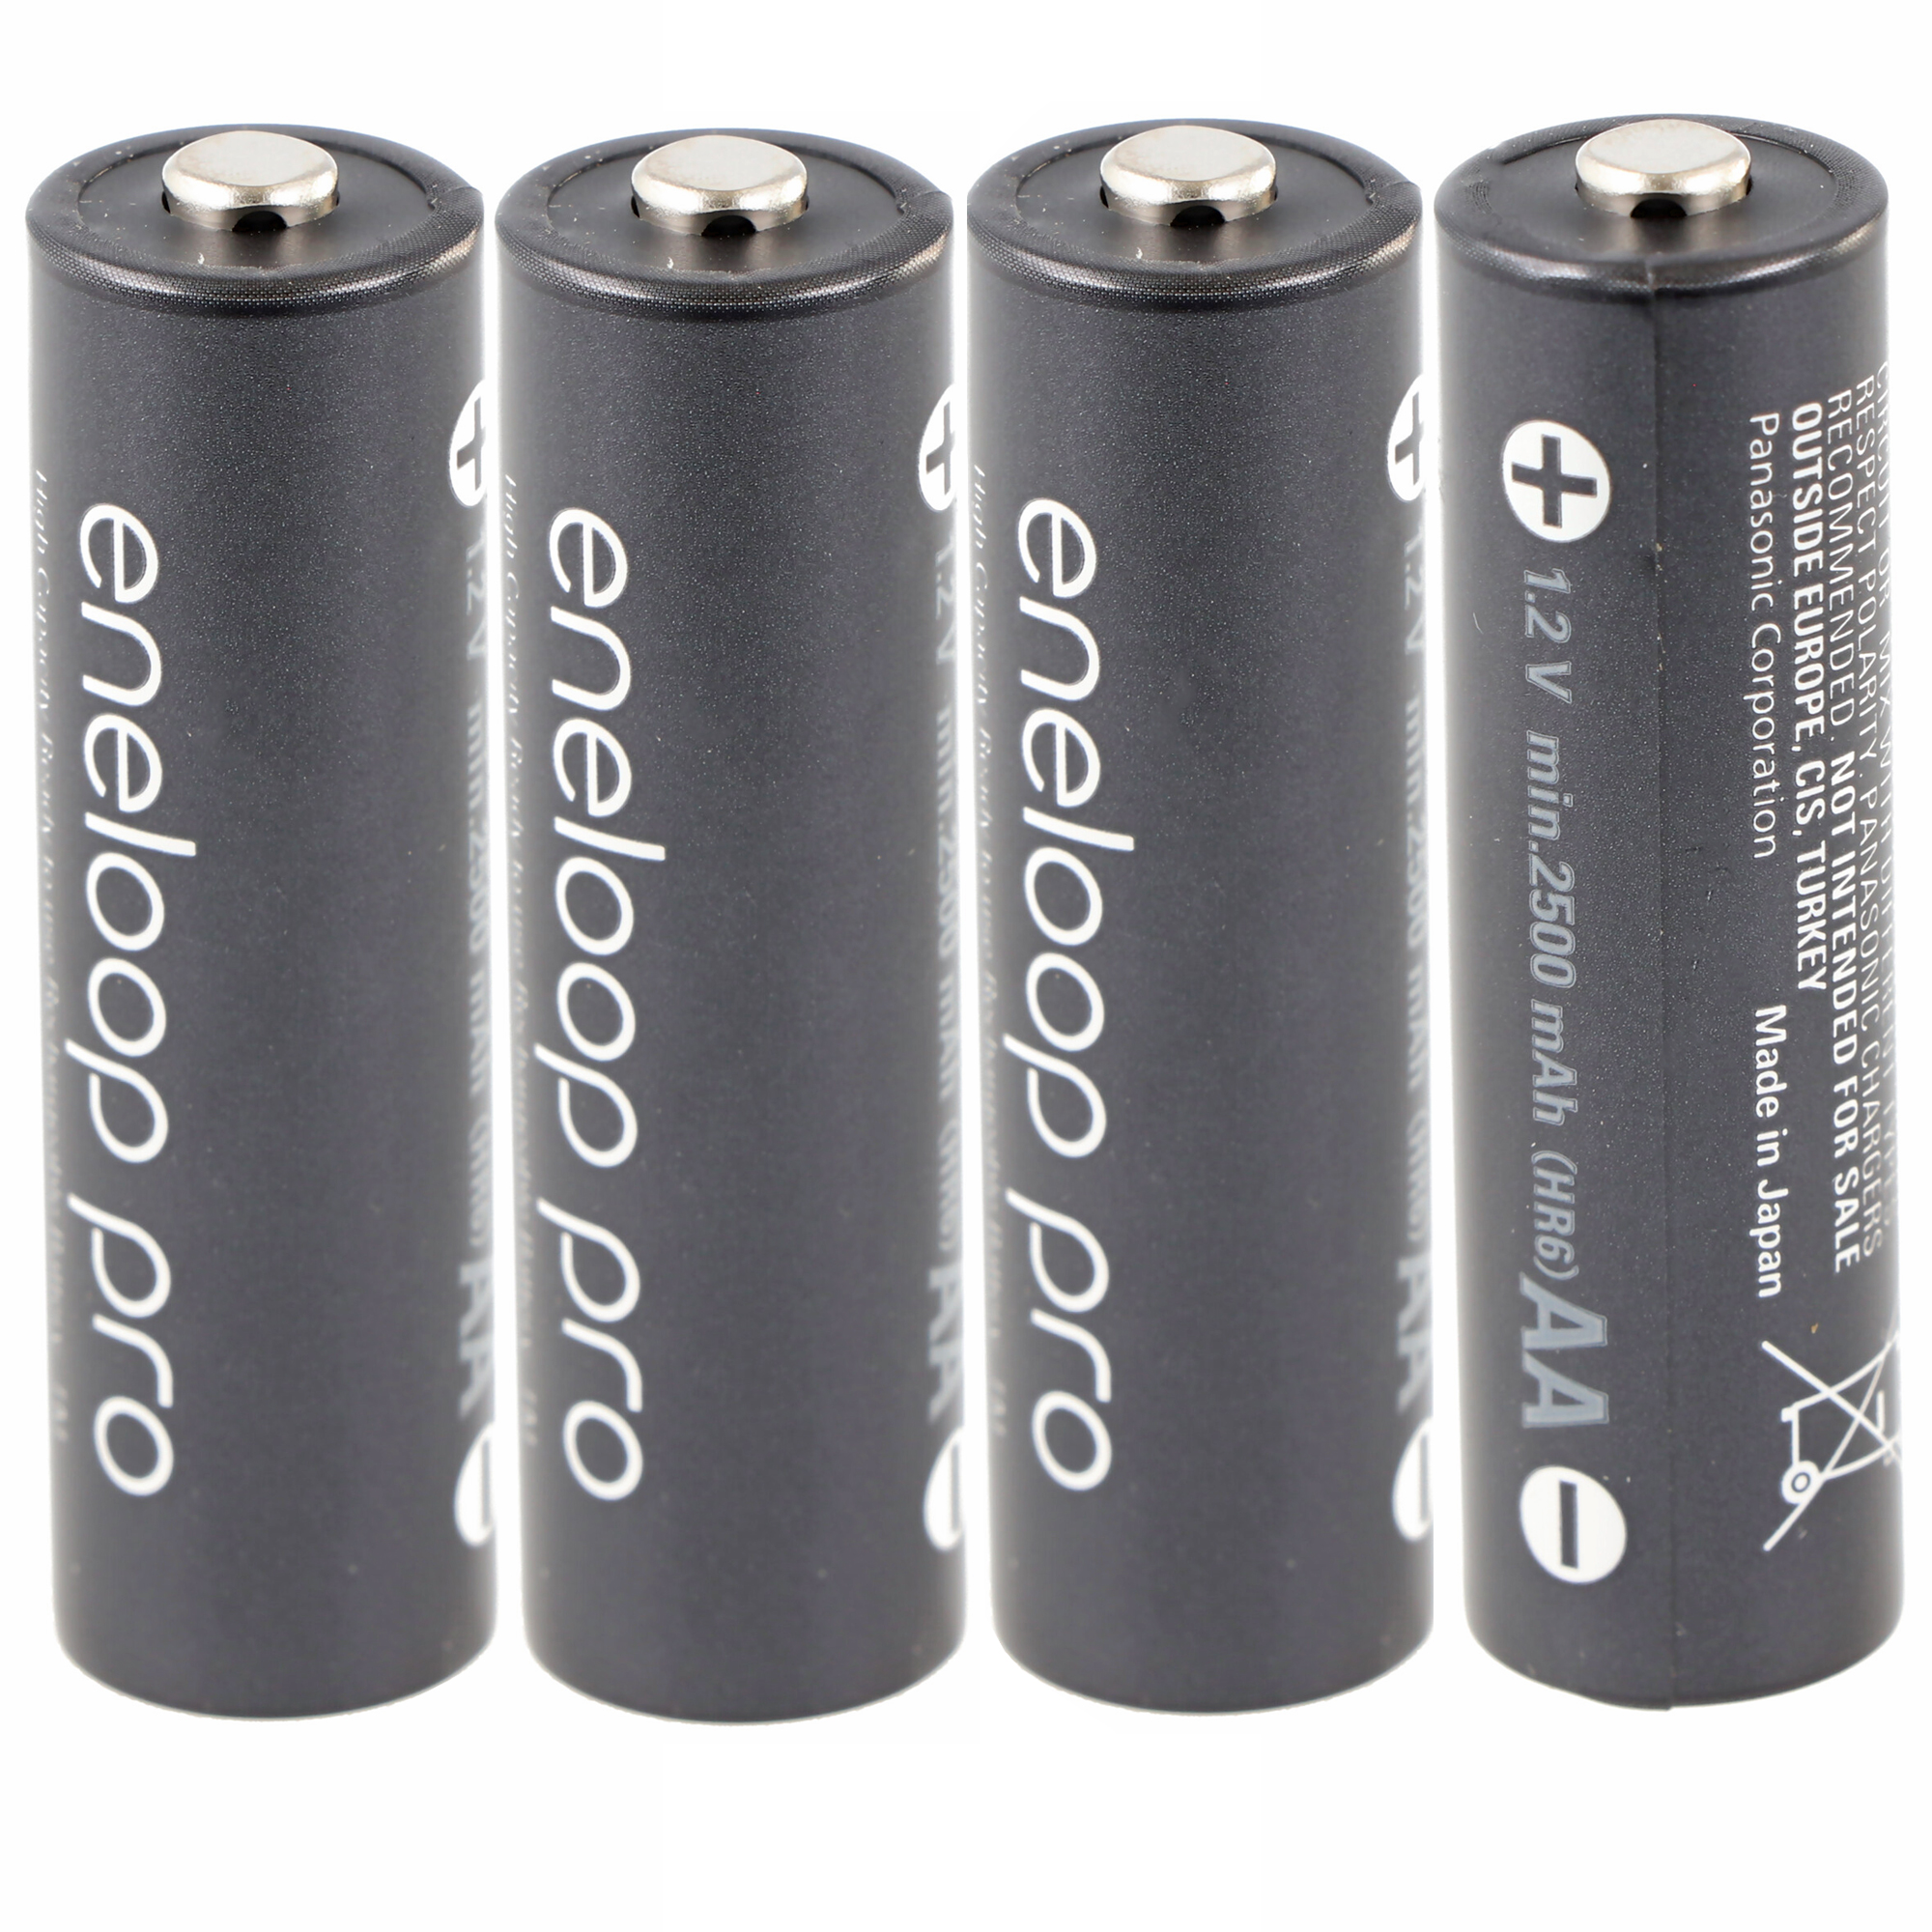 Panasonic eneloop pro, préchargé, blister de vente au détail (lot de 4)  Batterie rechargeable BK-3HCDE/4BE NiMH, Mignon, AA, HR06, 1,2 V et 2 500  mAh 5410853064152, Batteries Ready2use